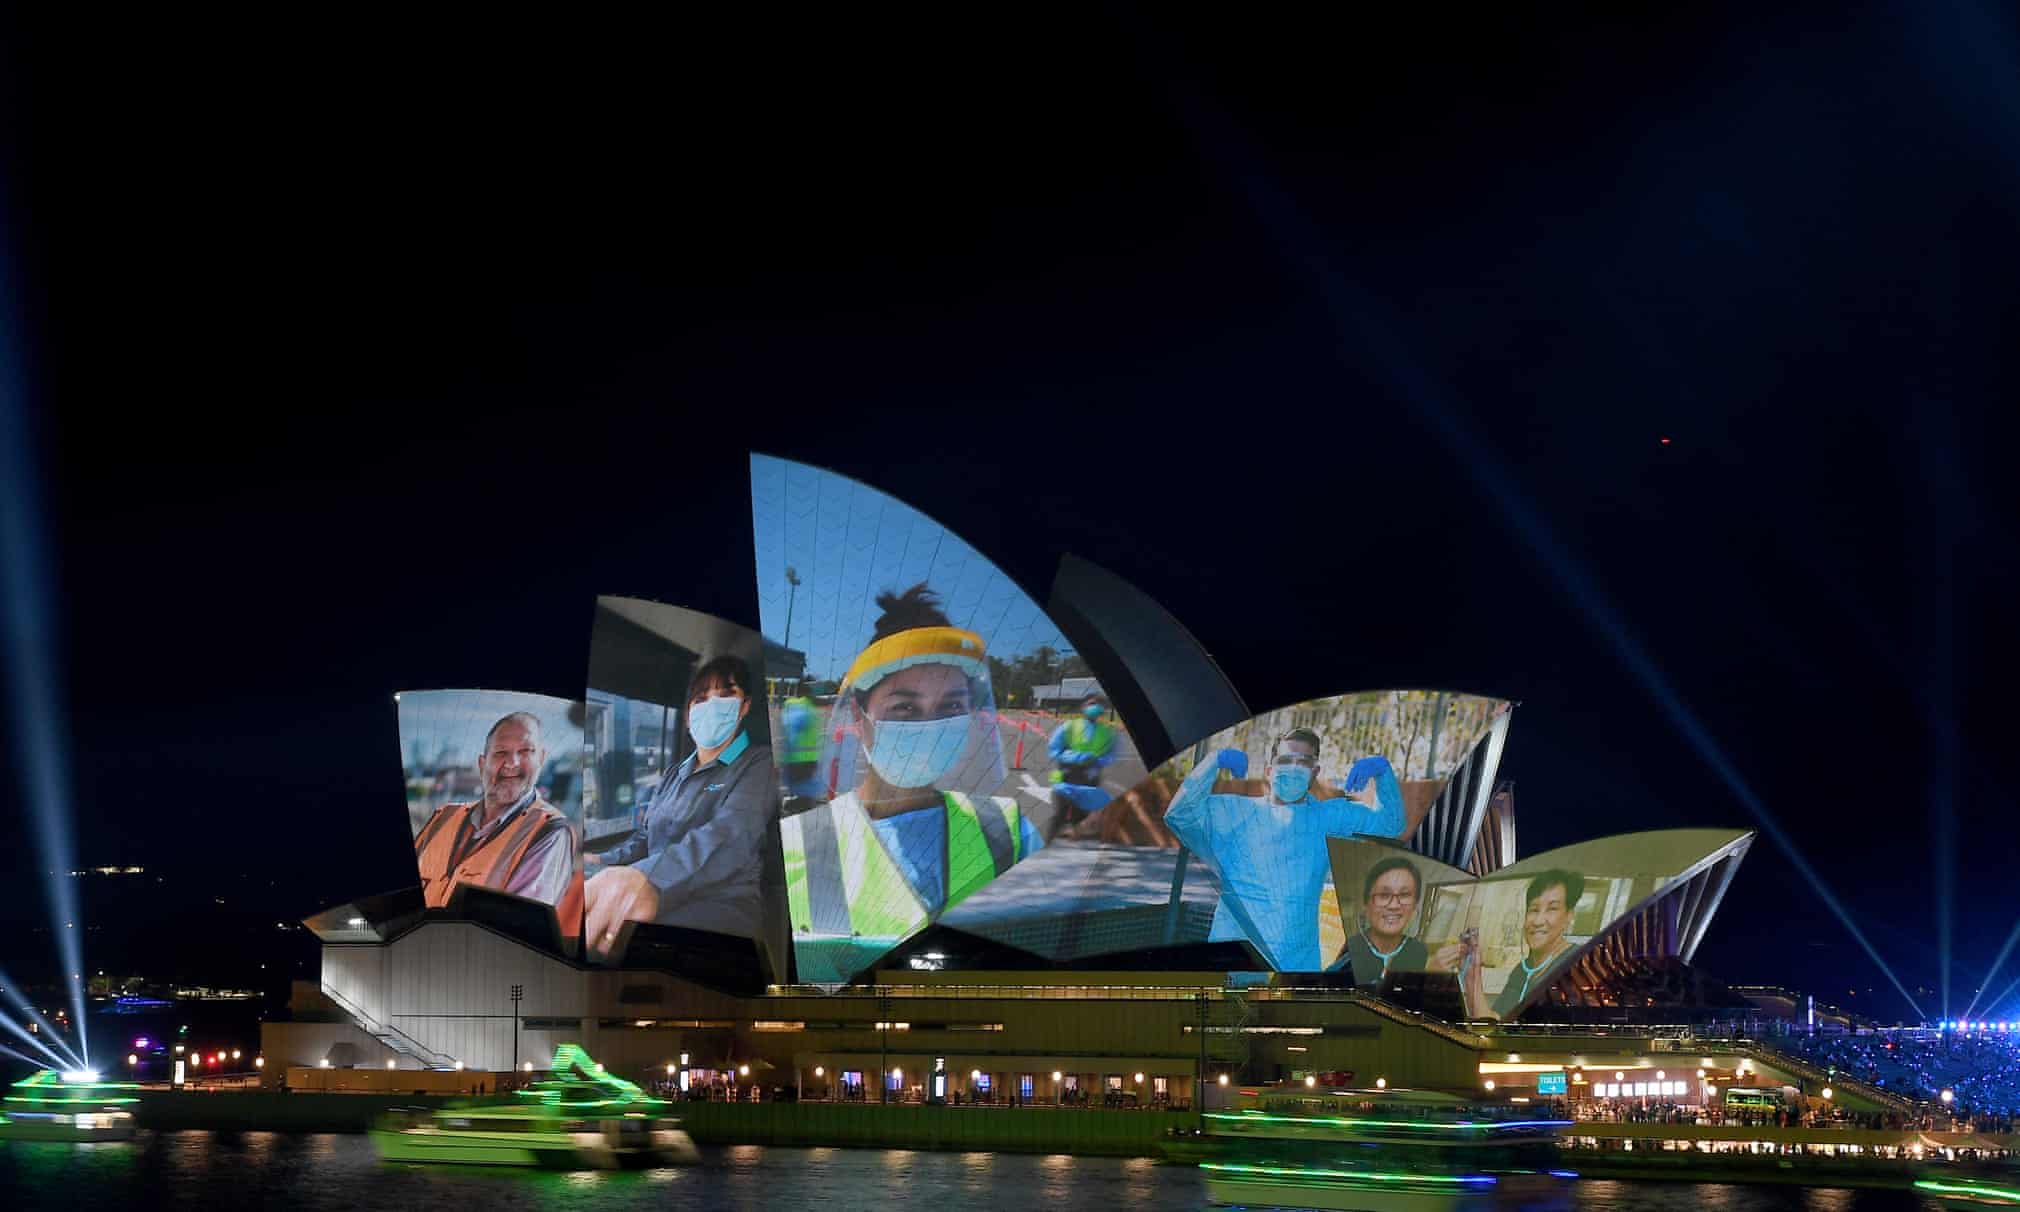 Австралиянинг Сидней шаҳрида Австралия кунида Сидней опера театри ташқи томонида намойиш этилаётган оддий ходимлар.